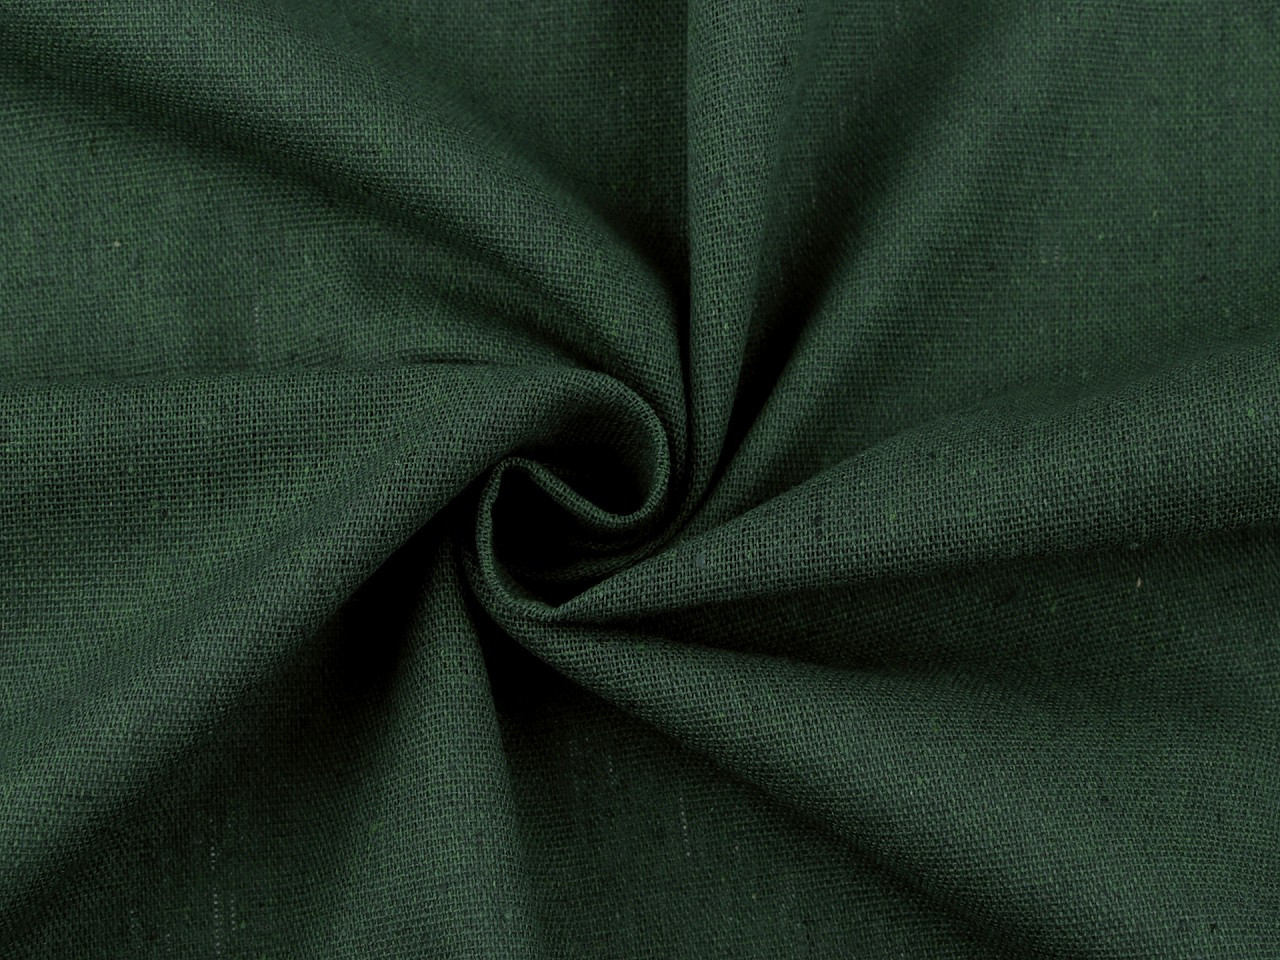 Lněná látka, barva 54 (175 g/m²) (36) zelená tmavá